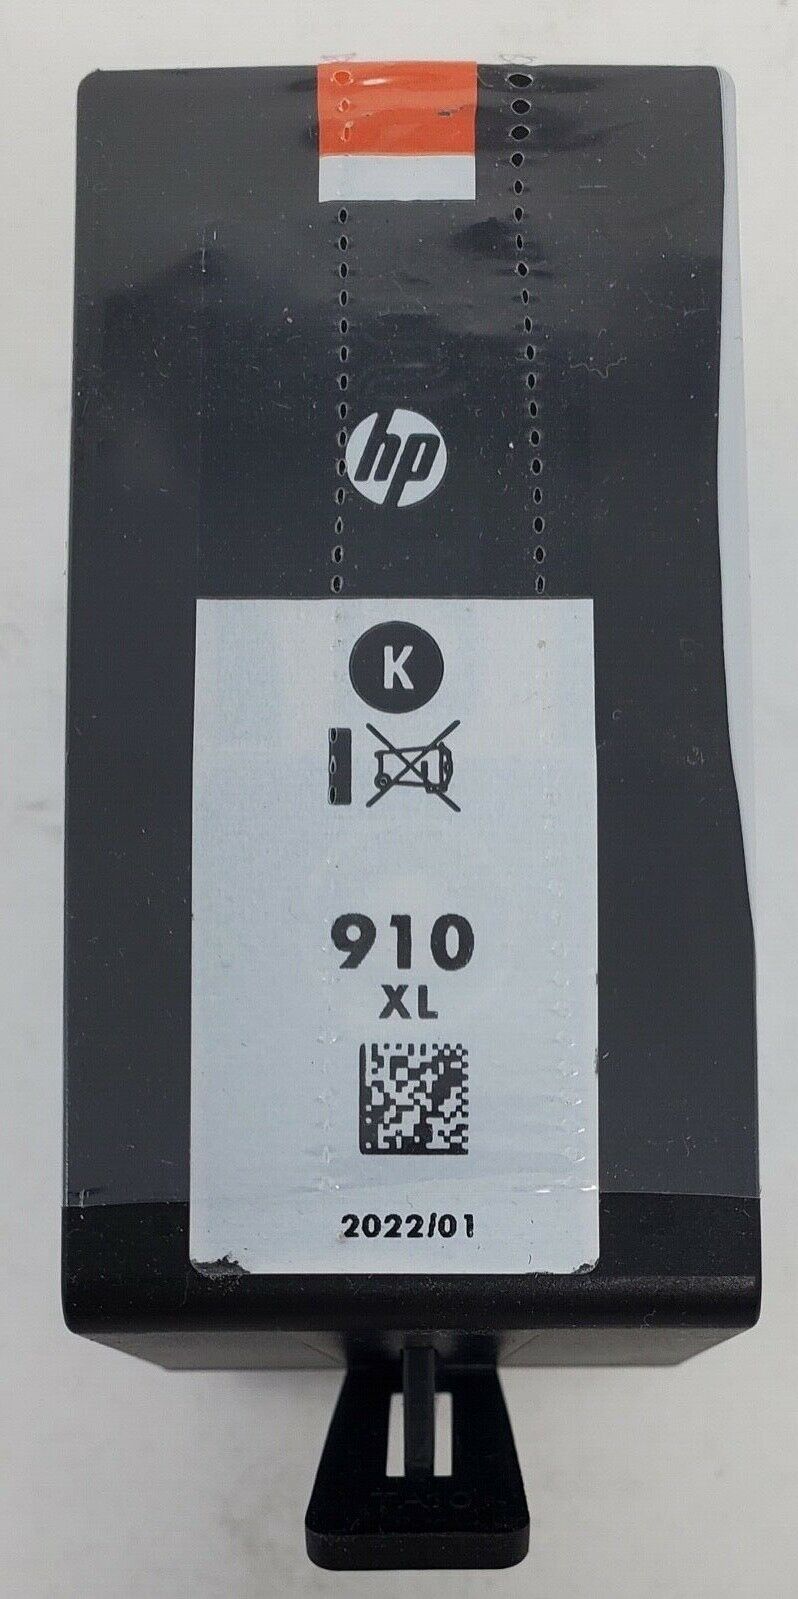 New HP 910XL Black Ink Cartridge in Bulk Packaging (Exp: 2022)